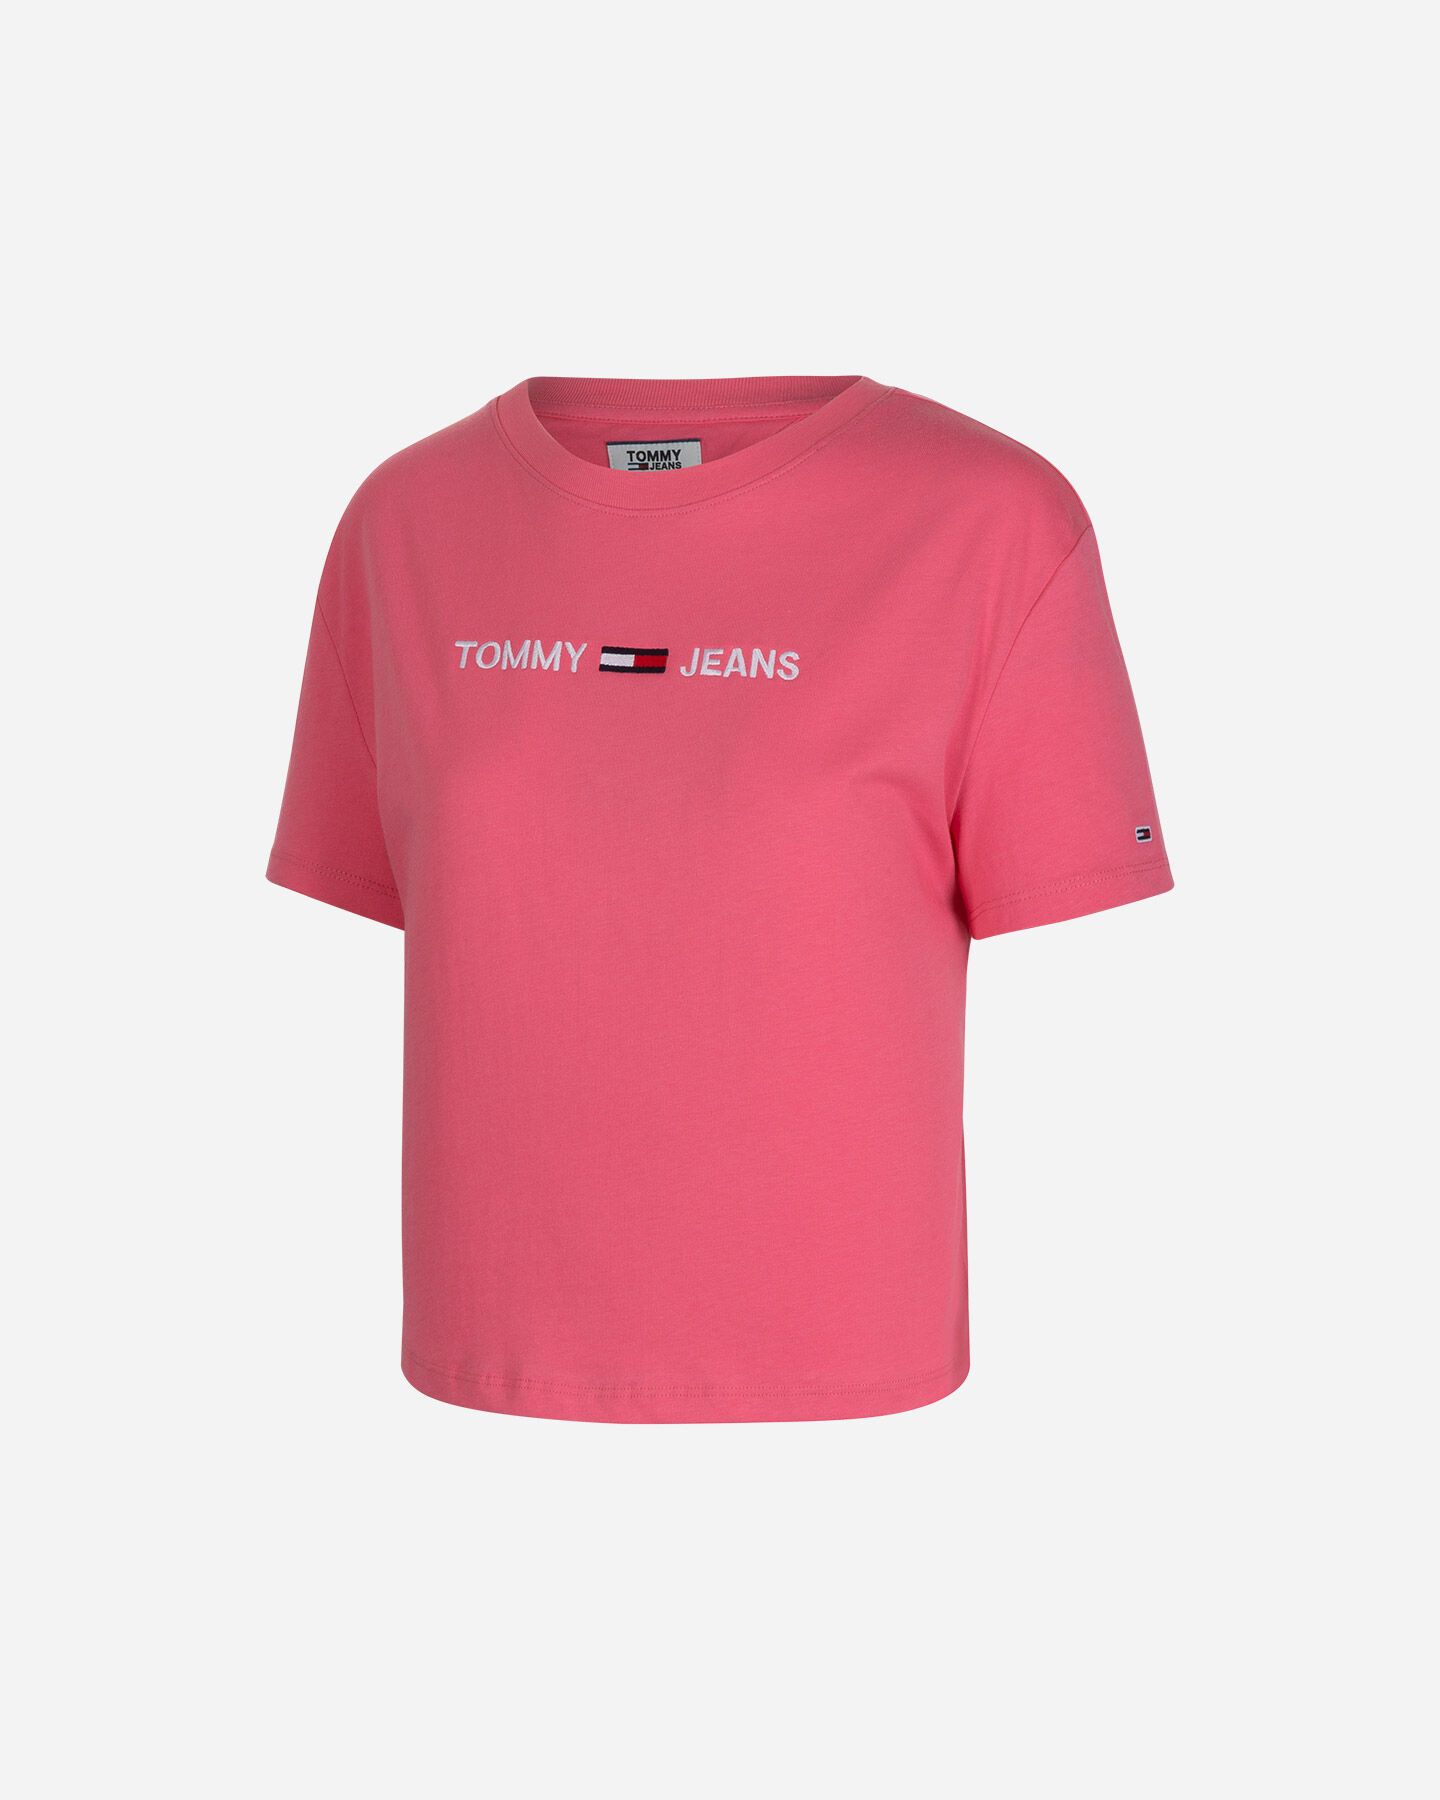  T-Shirt TOMMY HILFIGER MC CROP FIT LOGO W S4082517|TIK|XS scatto 0